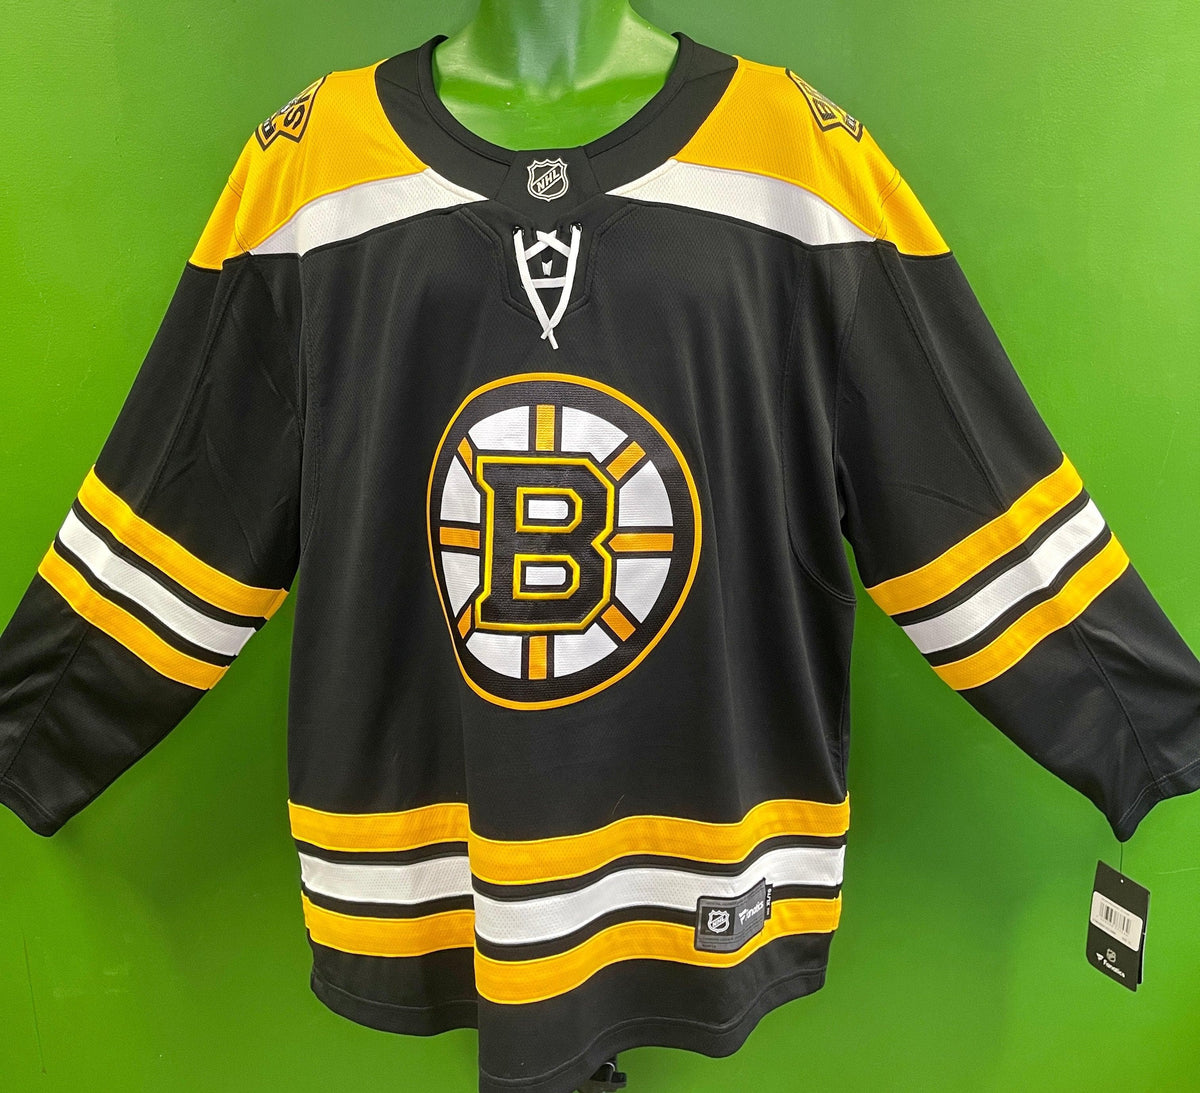 NHL Boston Bruins Fanatics Lace-Up Stitched Hockey Jersey Men's X-Large NWT